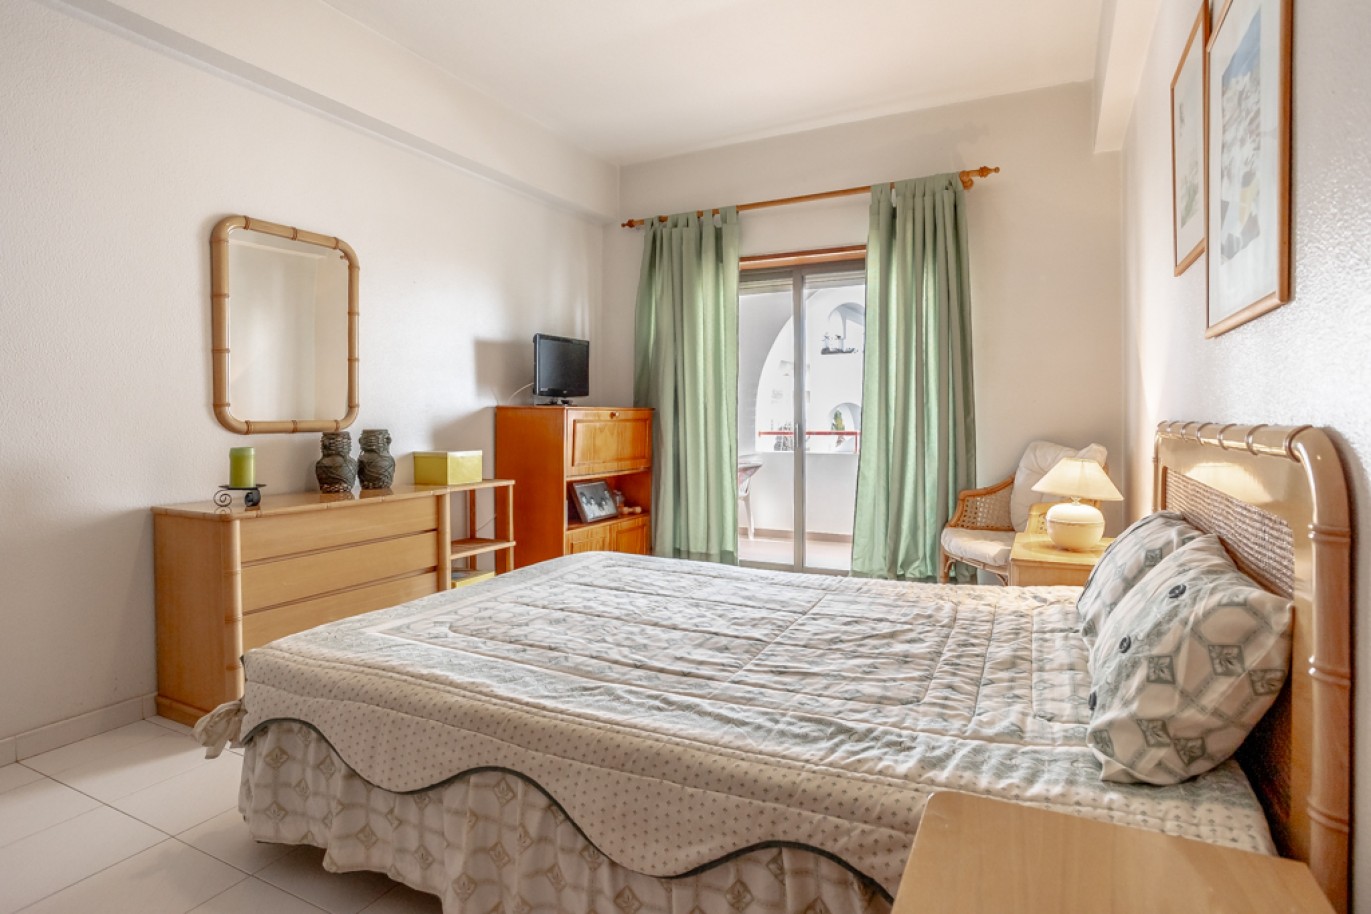 Apartamento com 1+1 quartos, com vista mar, para venda em Porches, Algarve_257040